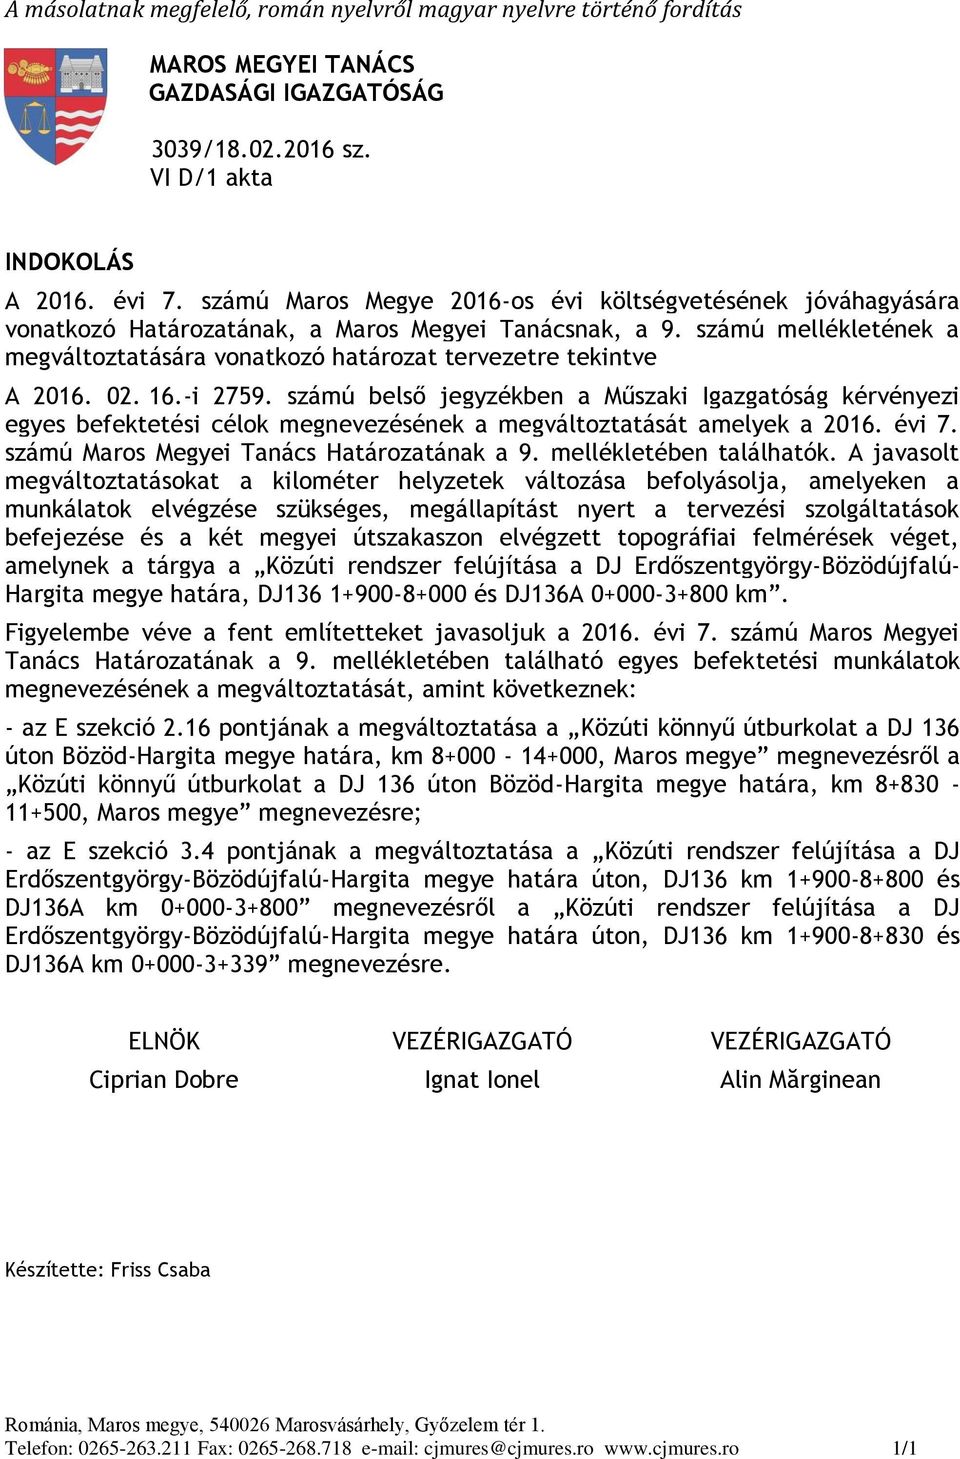 -i 2759. ú belső jegyzékben a Műszaki Igazgatóság kérvényezi egyes befektetési célok megnevezésének a megváltoztatását amelyek a. évi 7. ú Maros Megyei Tanács Határozatának a 9.